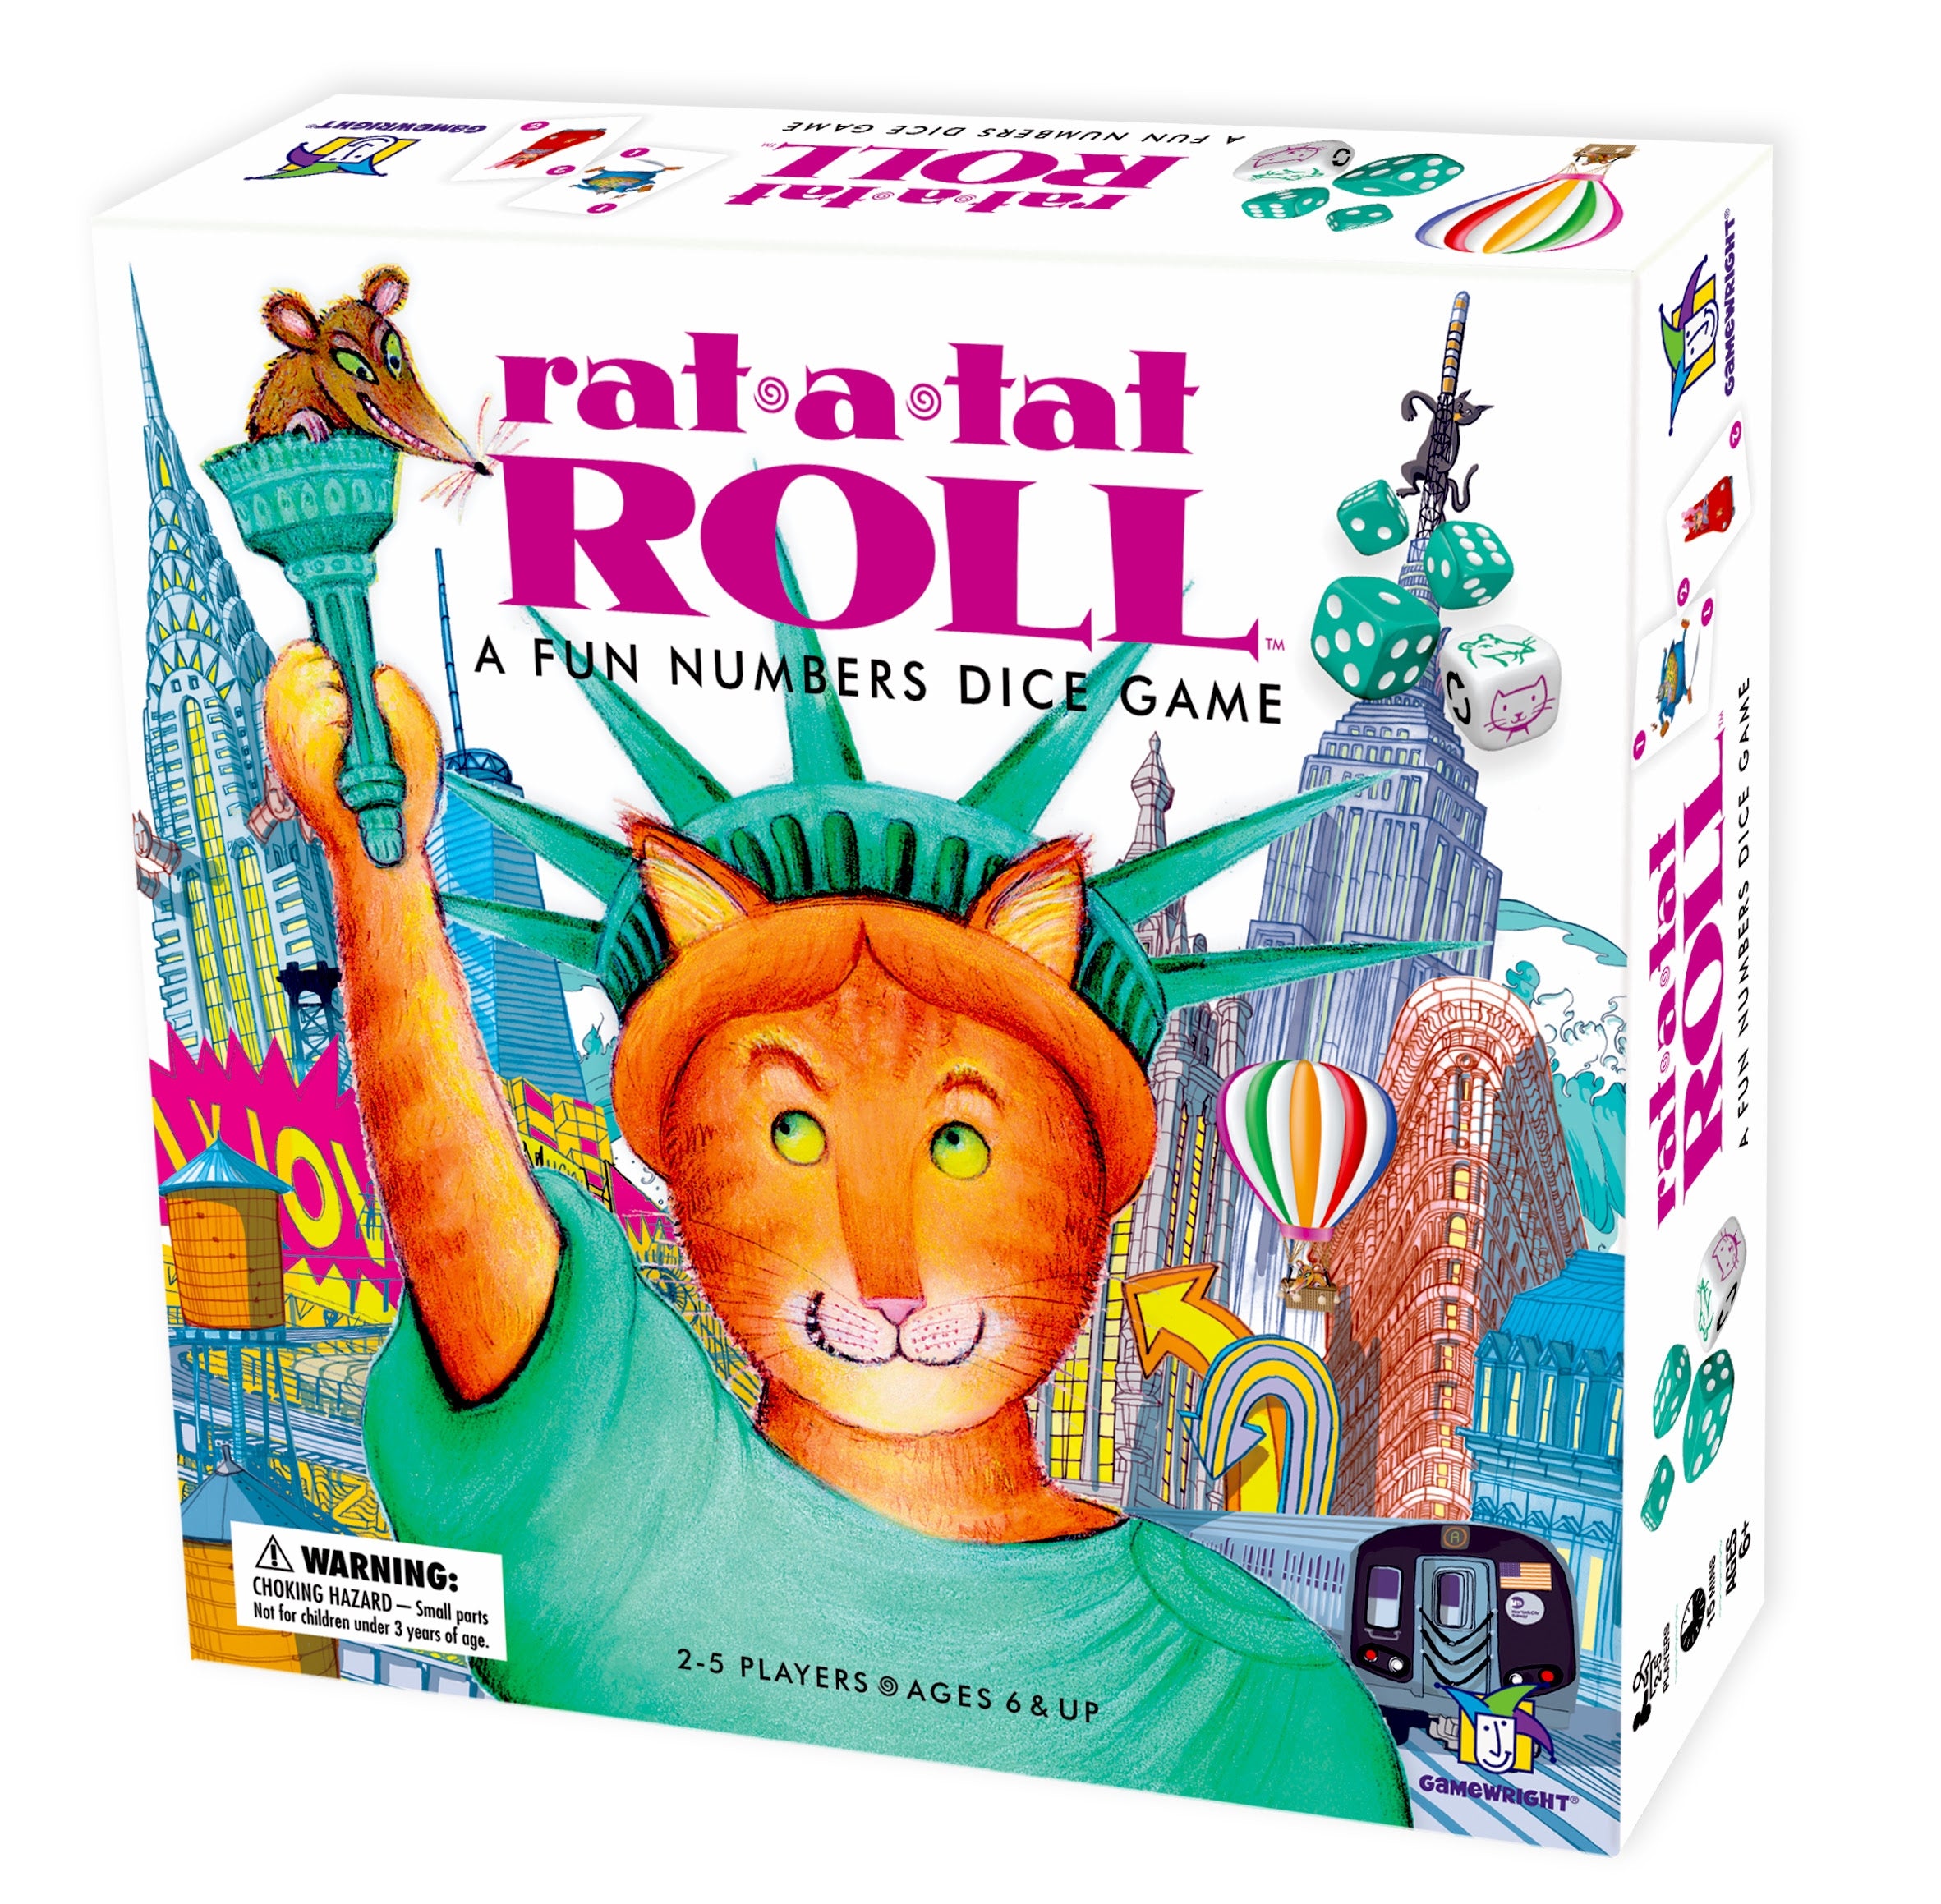 Rat-a-tat Roll